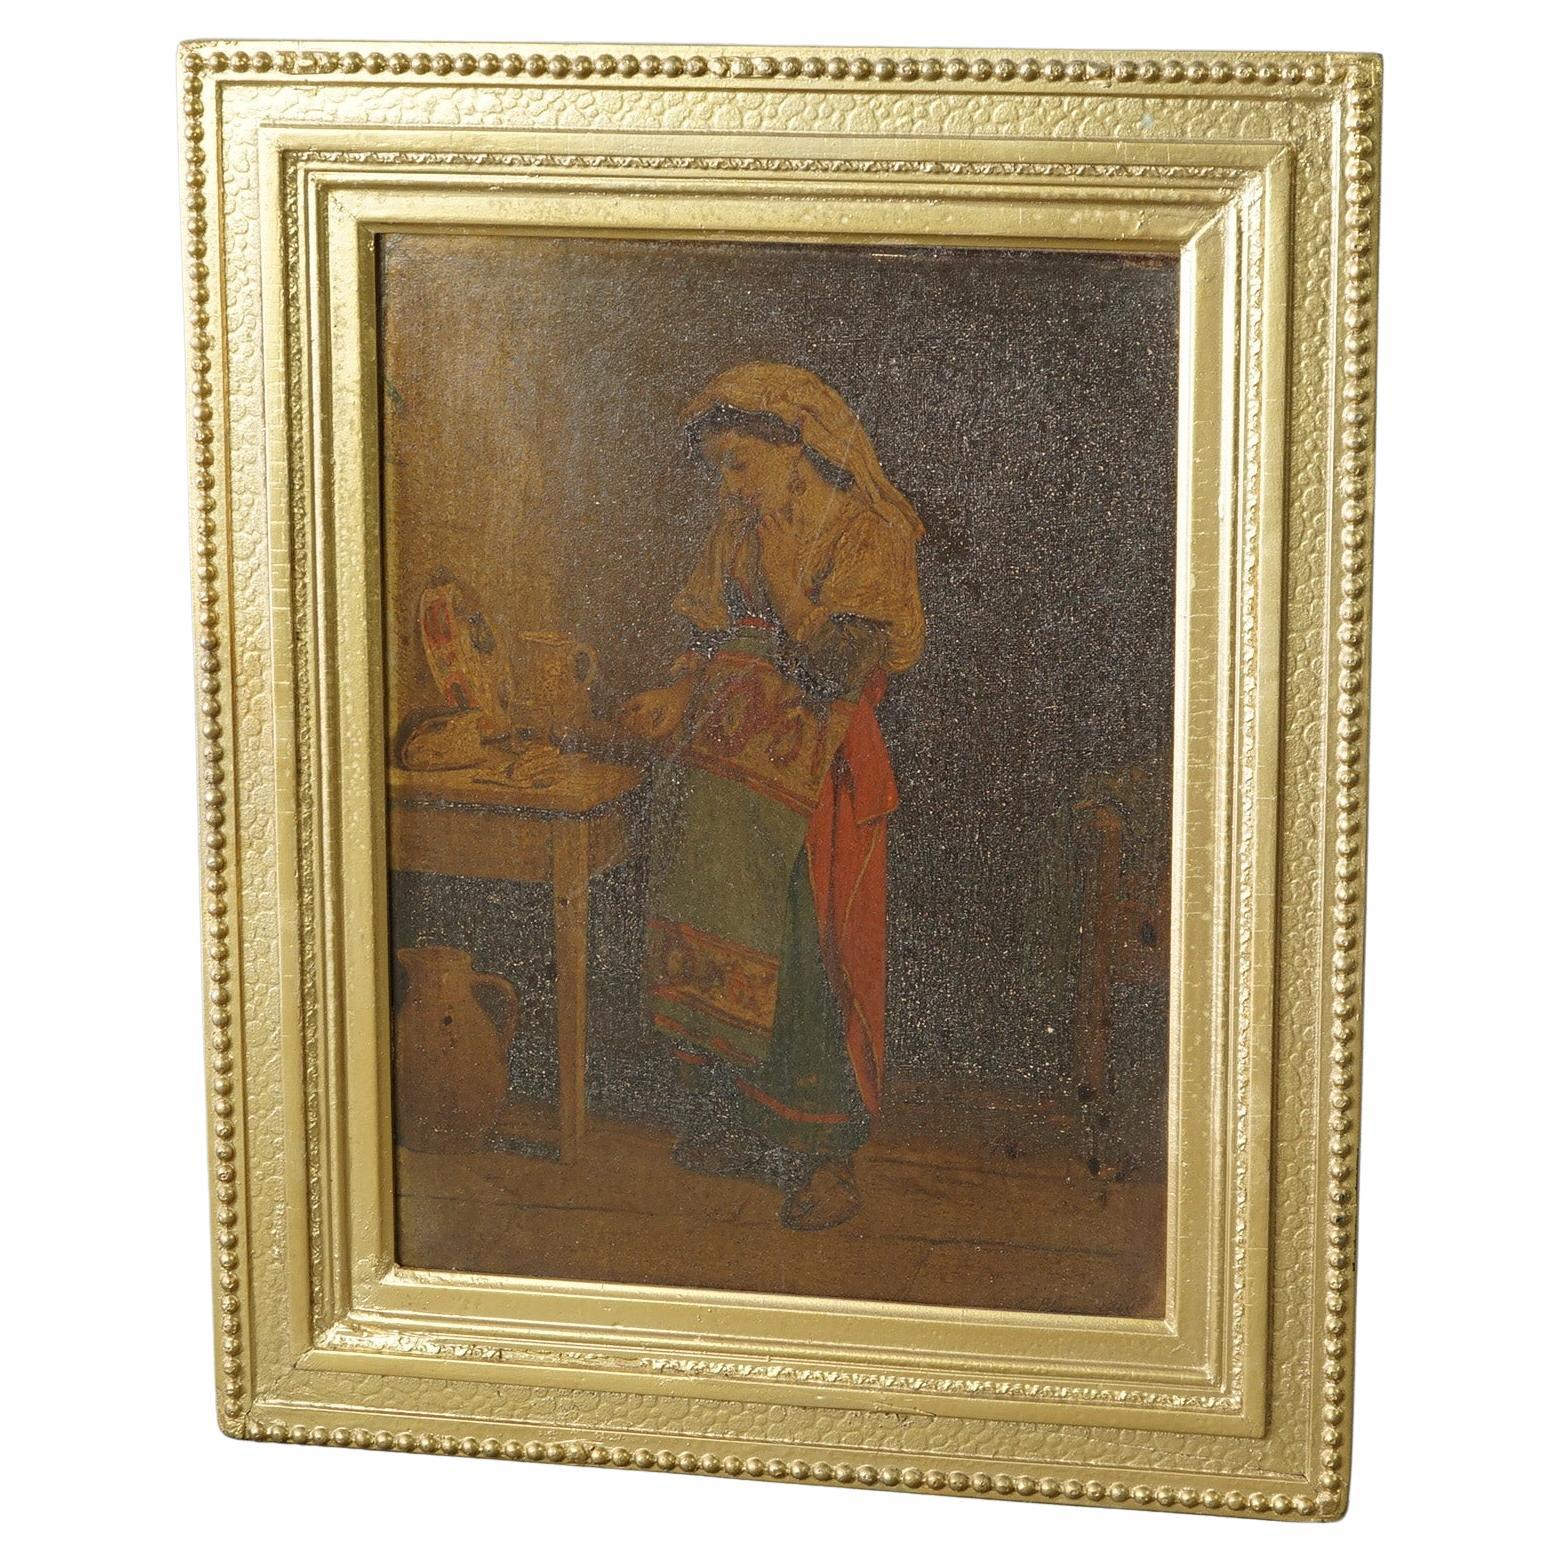 Une peinture ancienne offre un portrait de femme à l'huile sur panneau de bois, signé par l'artiste en bas à droite, assis dans un cadre en bois doré, 19ème siècle.

Dimensions - 16,25 